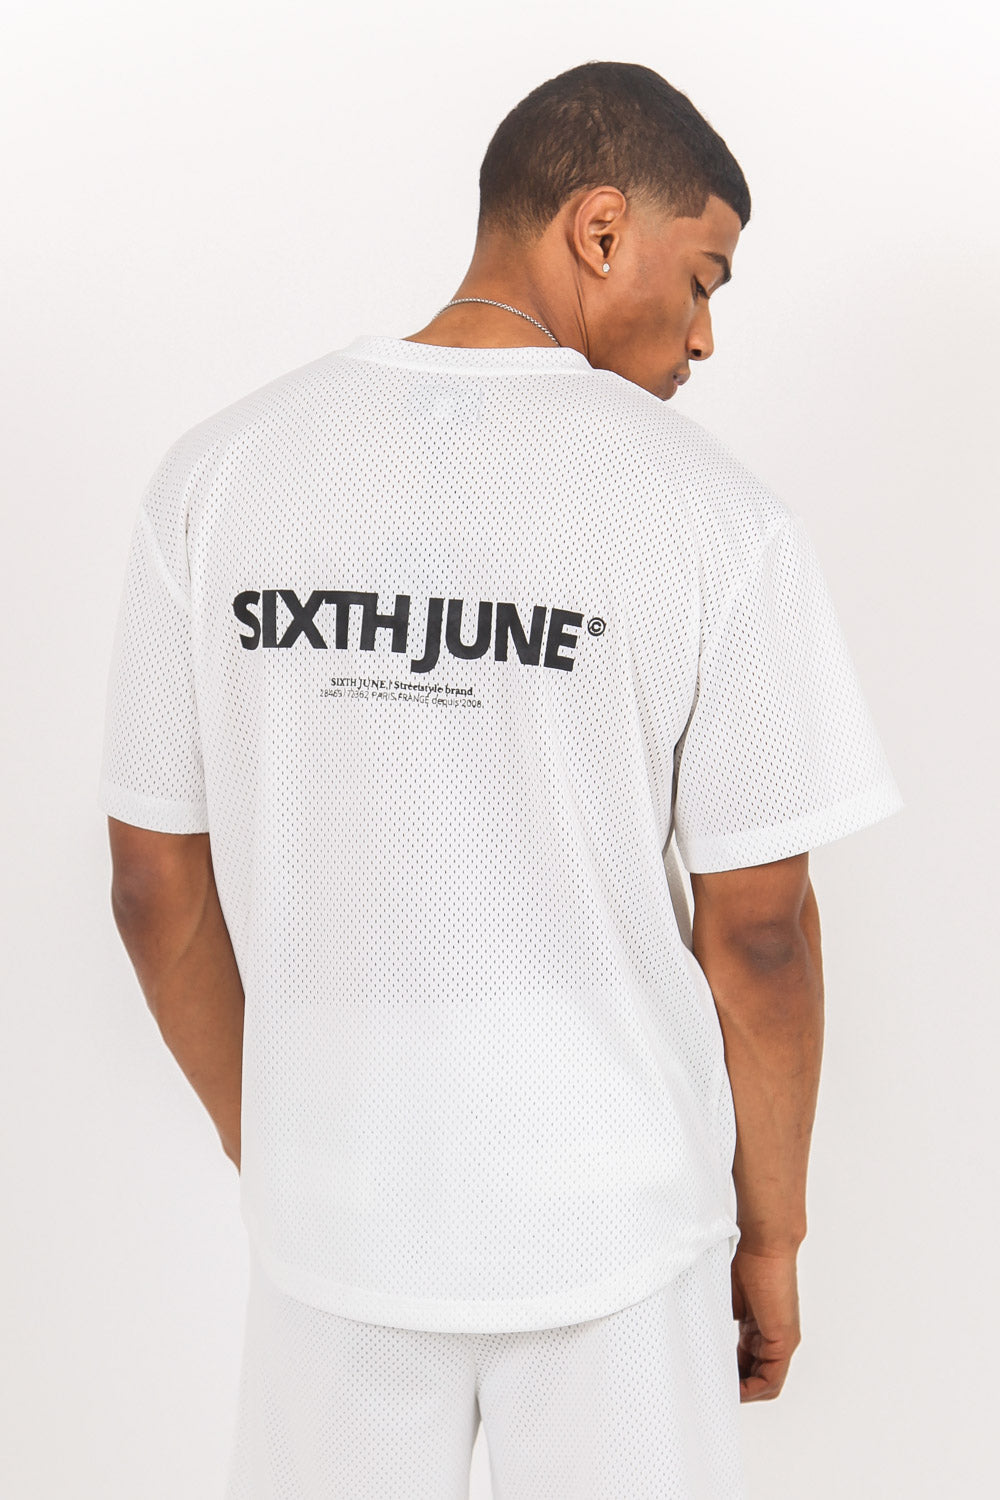 Sixth June - Maillot mesh logo blanc